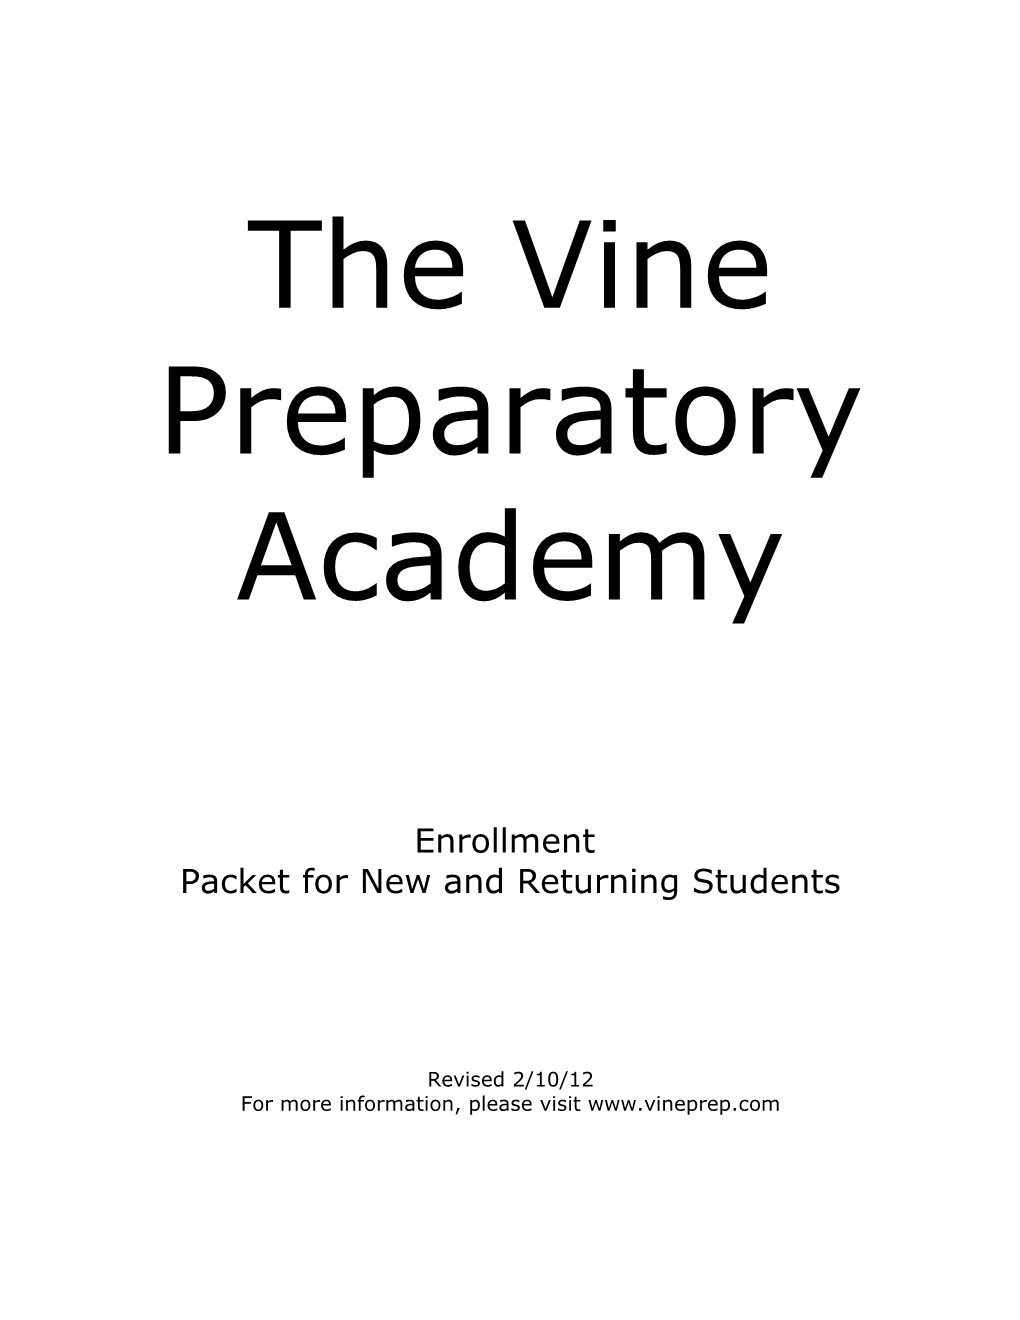 The Vine Preparatory Academy